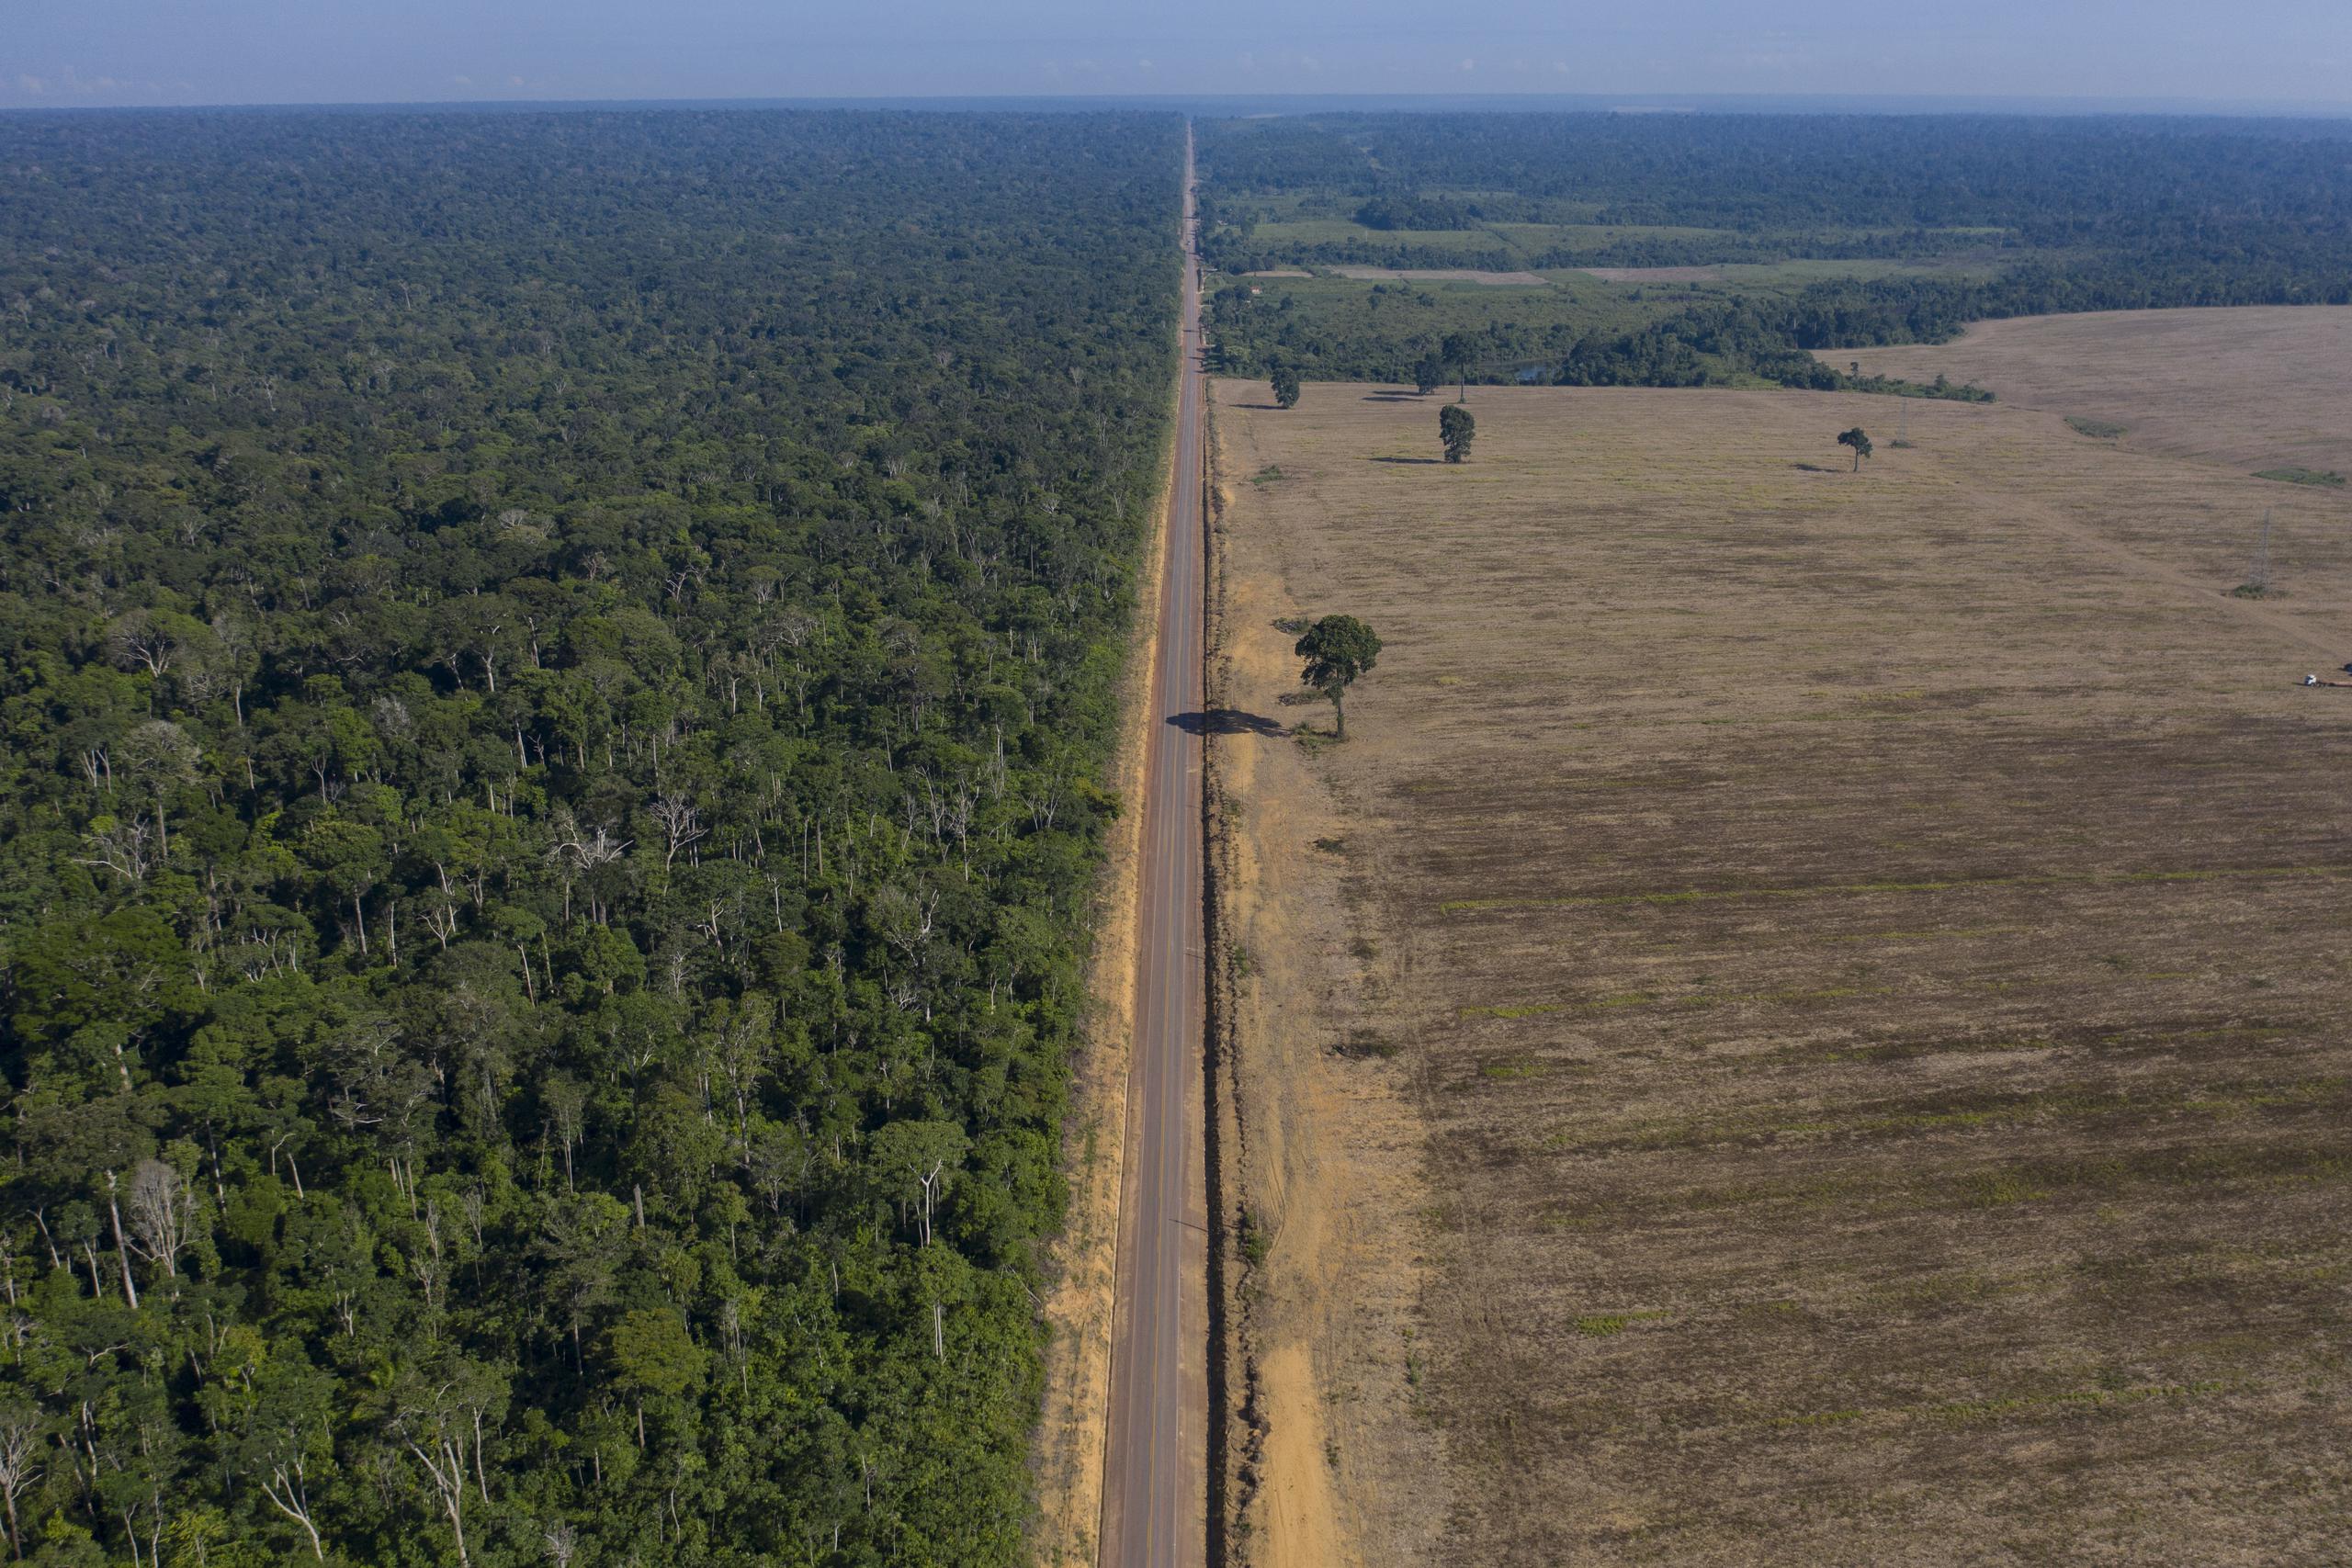 La ruta BR-163 entre el Bosque Nacional de Tapajos, izquierda, y un campo de soya en Belterra, estado de Pará, Brasil.